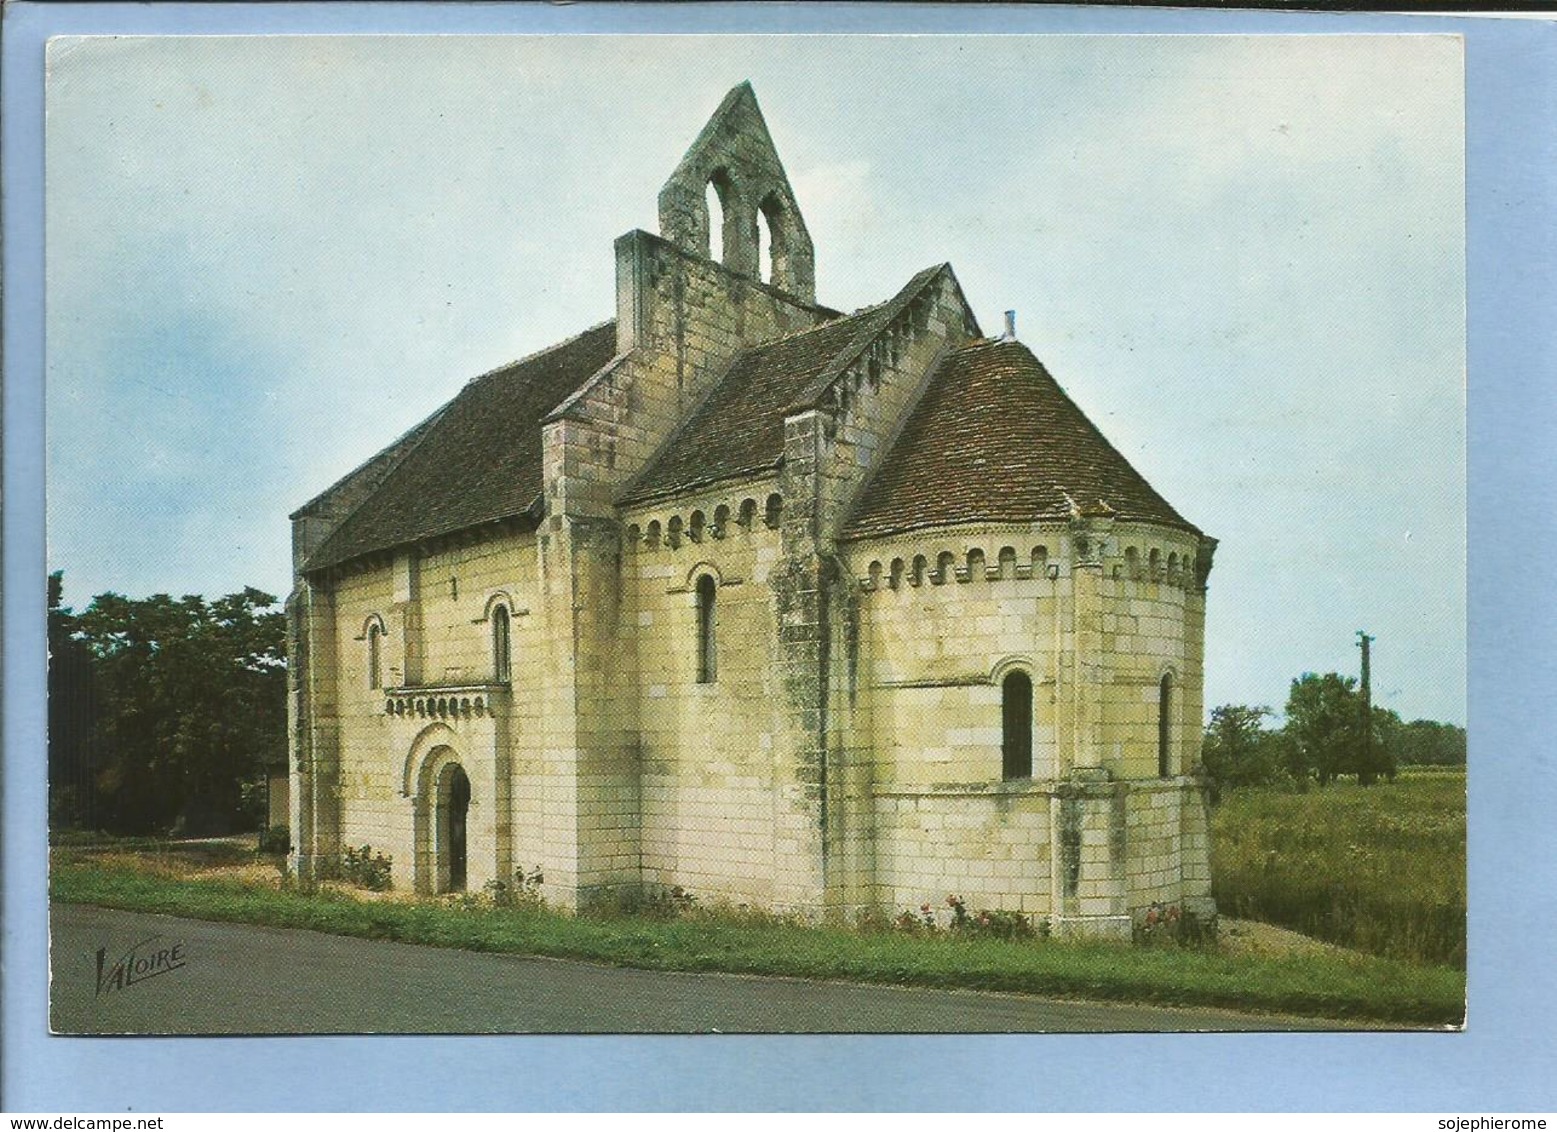 Saint-Aignan-Noyers-sur-Cher (41) La Chapelle Romane Saint-Lazare 2 Scans 31-08-1978 Flamme De Saint-Aignan - Noyers Sur Cher